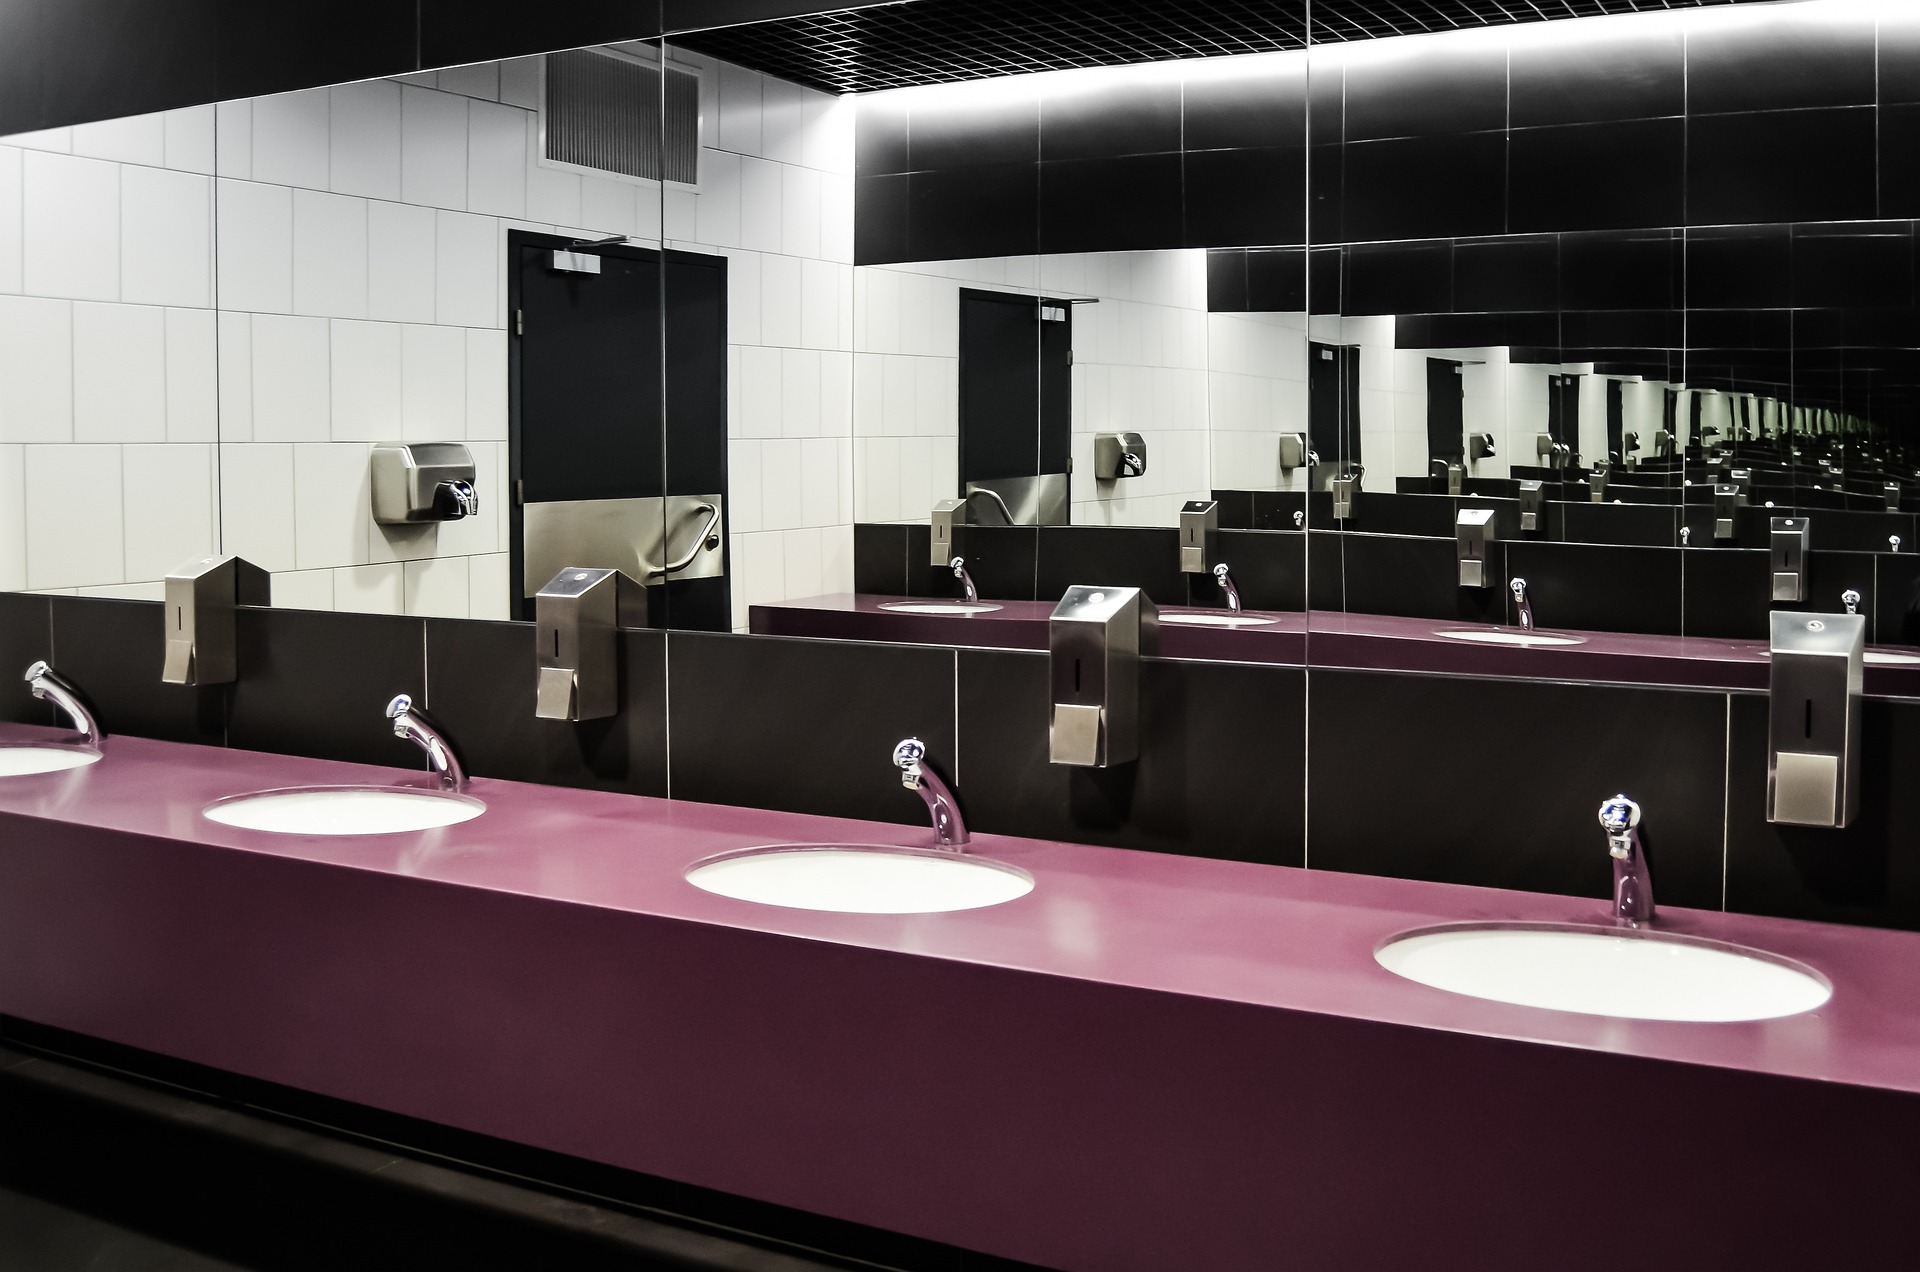 Najważniejsze elementy w publicznych toaletach: Co powinno być dostępne, aby sprostać potrzebom różnych grup użytkowników?